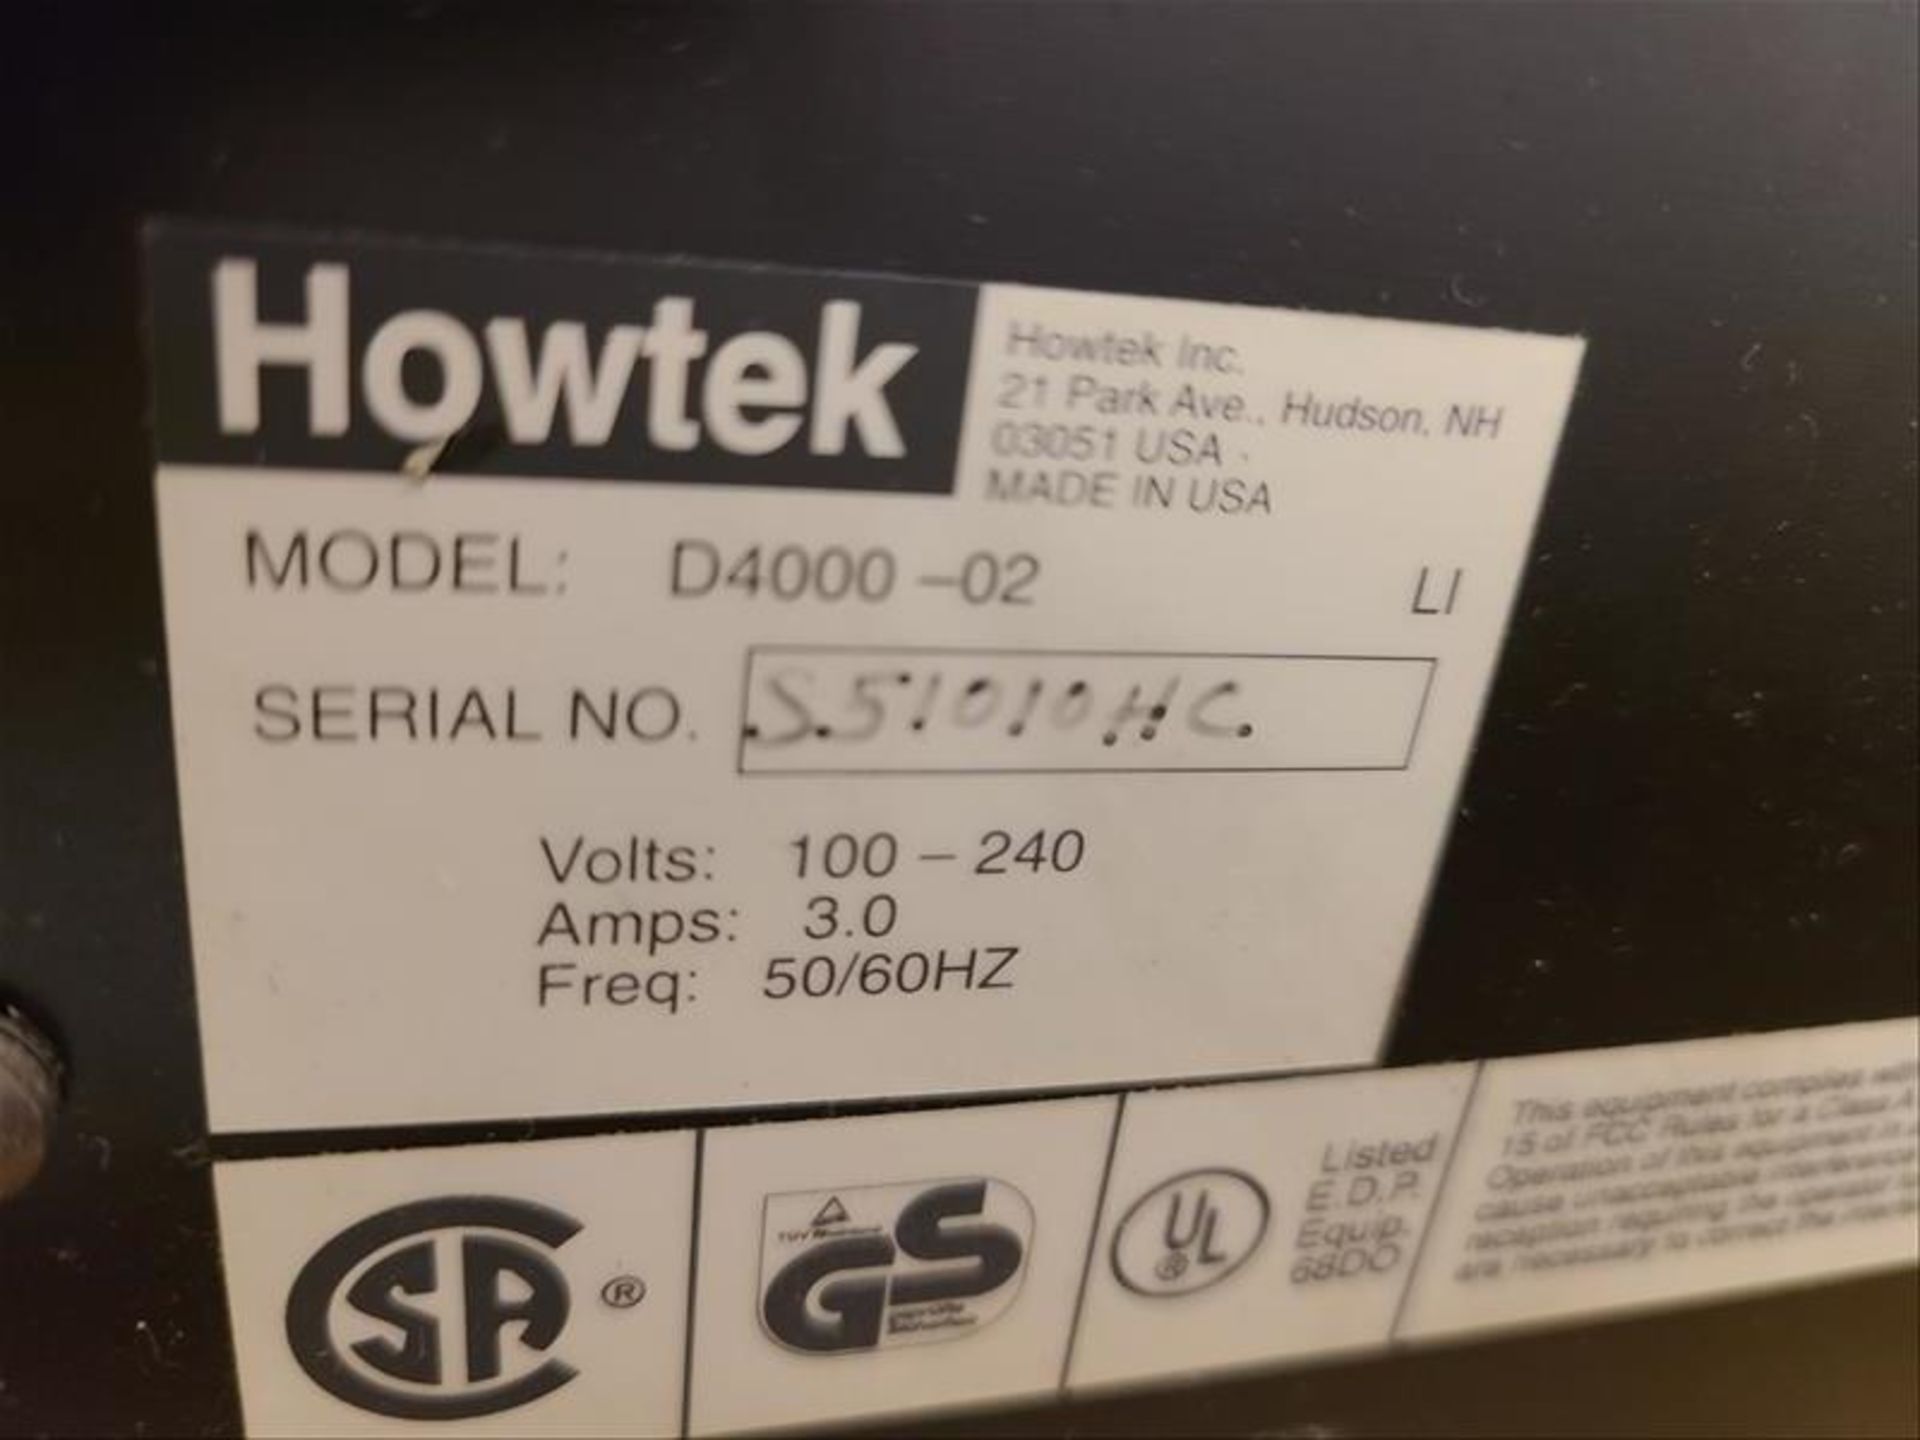 Howtek Drum Scanner, Scanmaster 4500, model D4000-02, S/N. S51010HC, 100-240V, 3 amps, 50Hz - Image 3 of 3